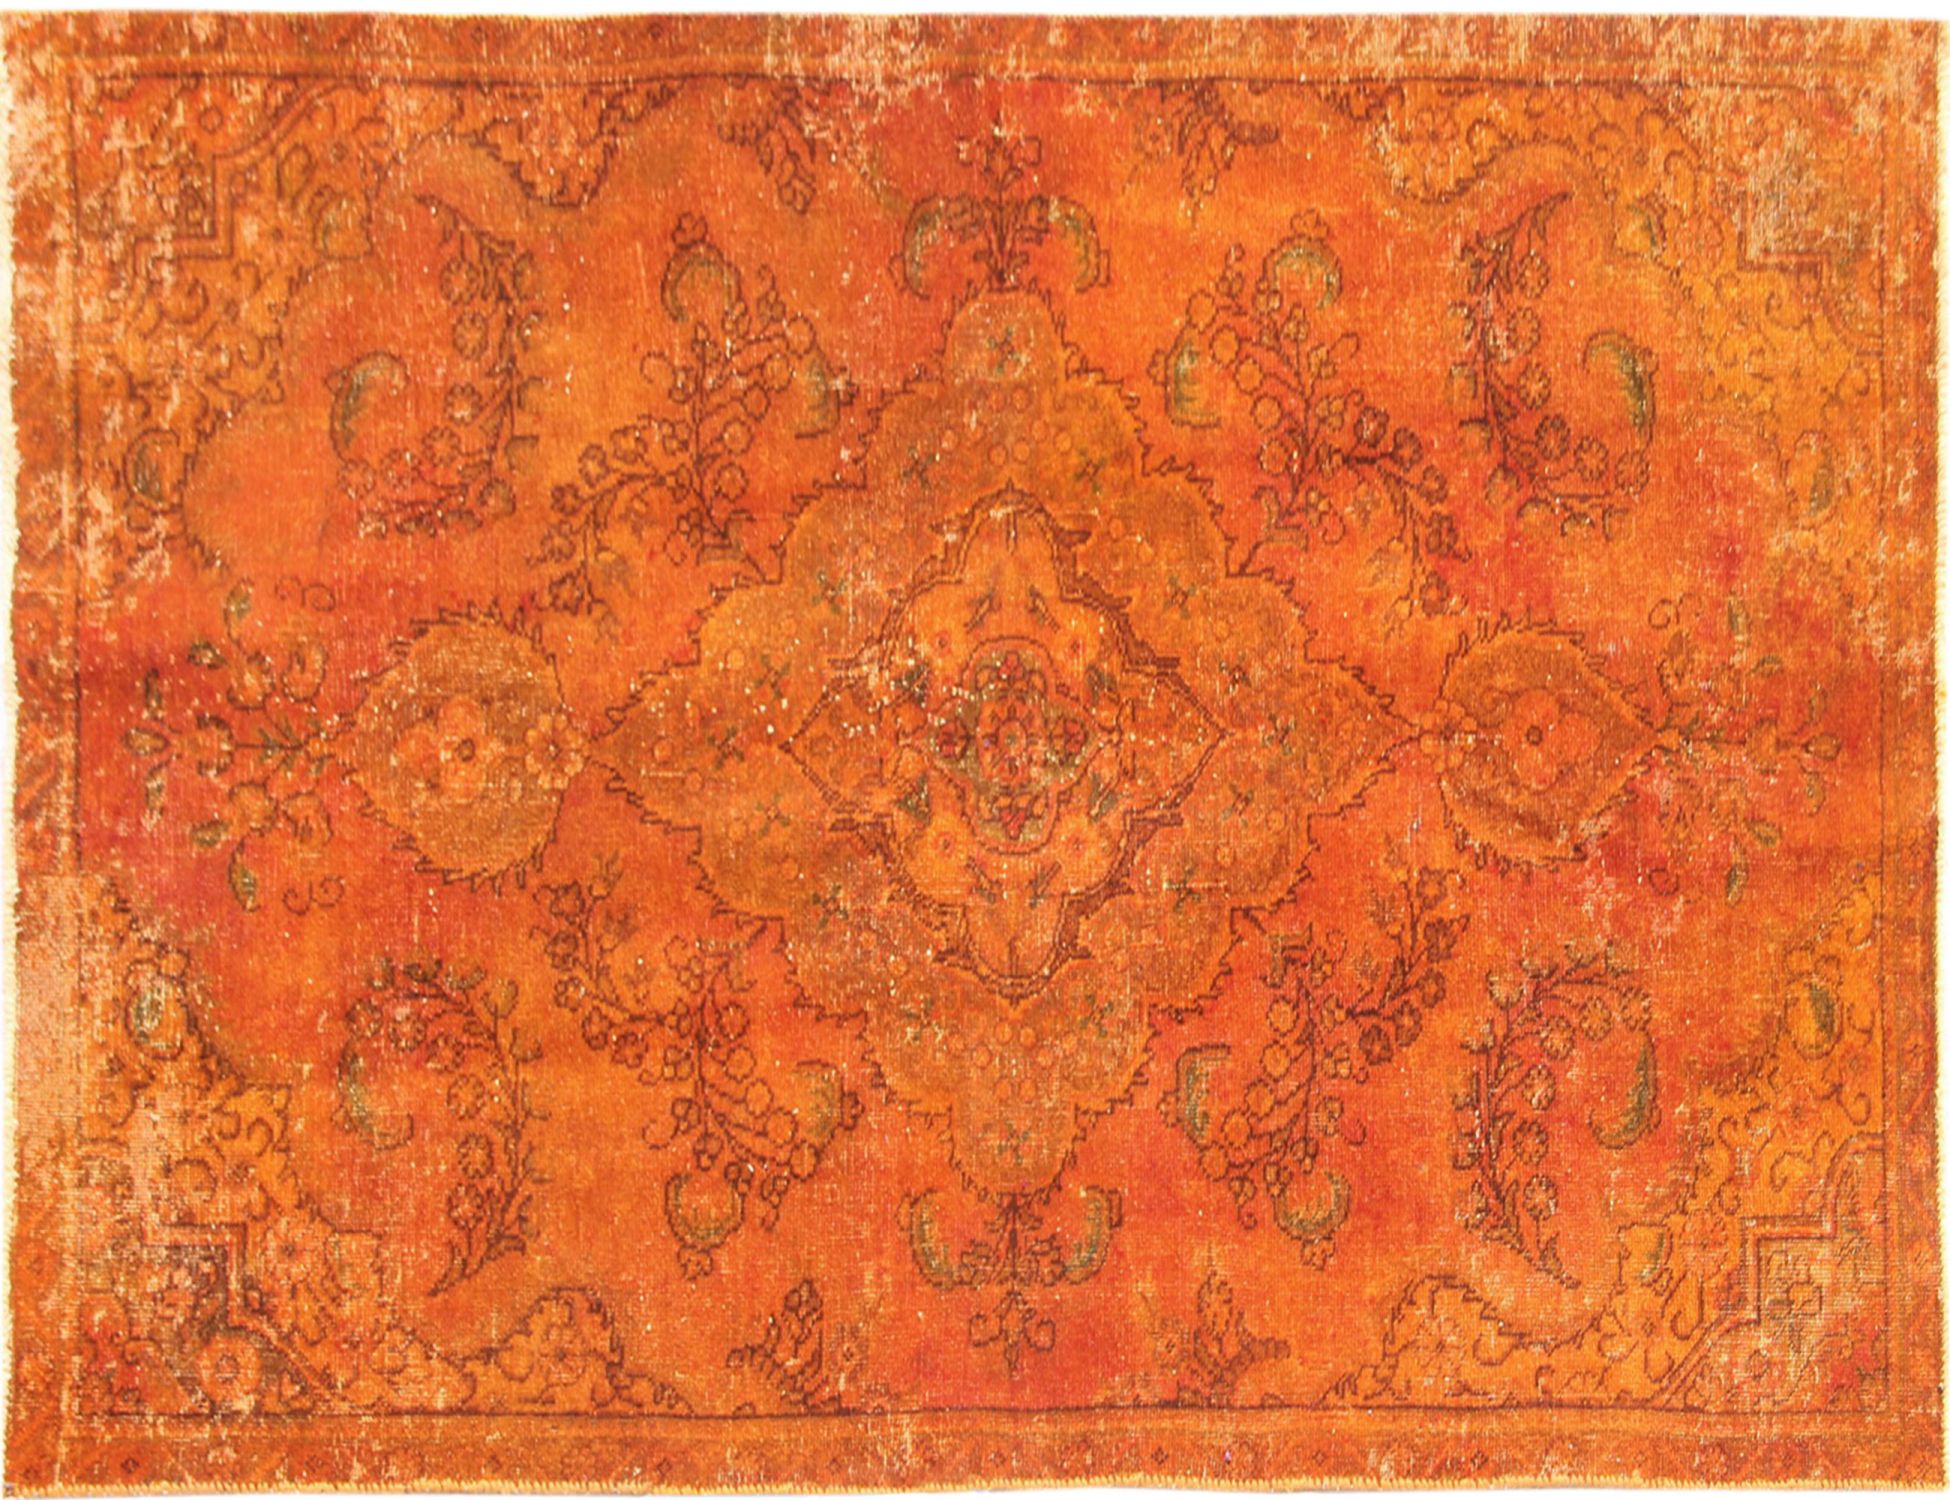 Persischer Vintage Teppich  orange <br/>258 x 141 cm